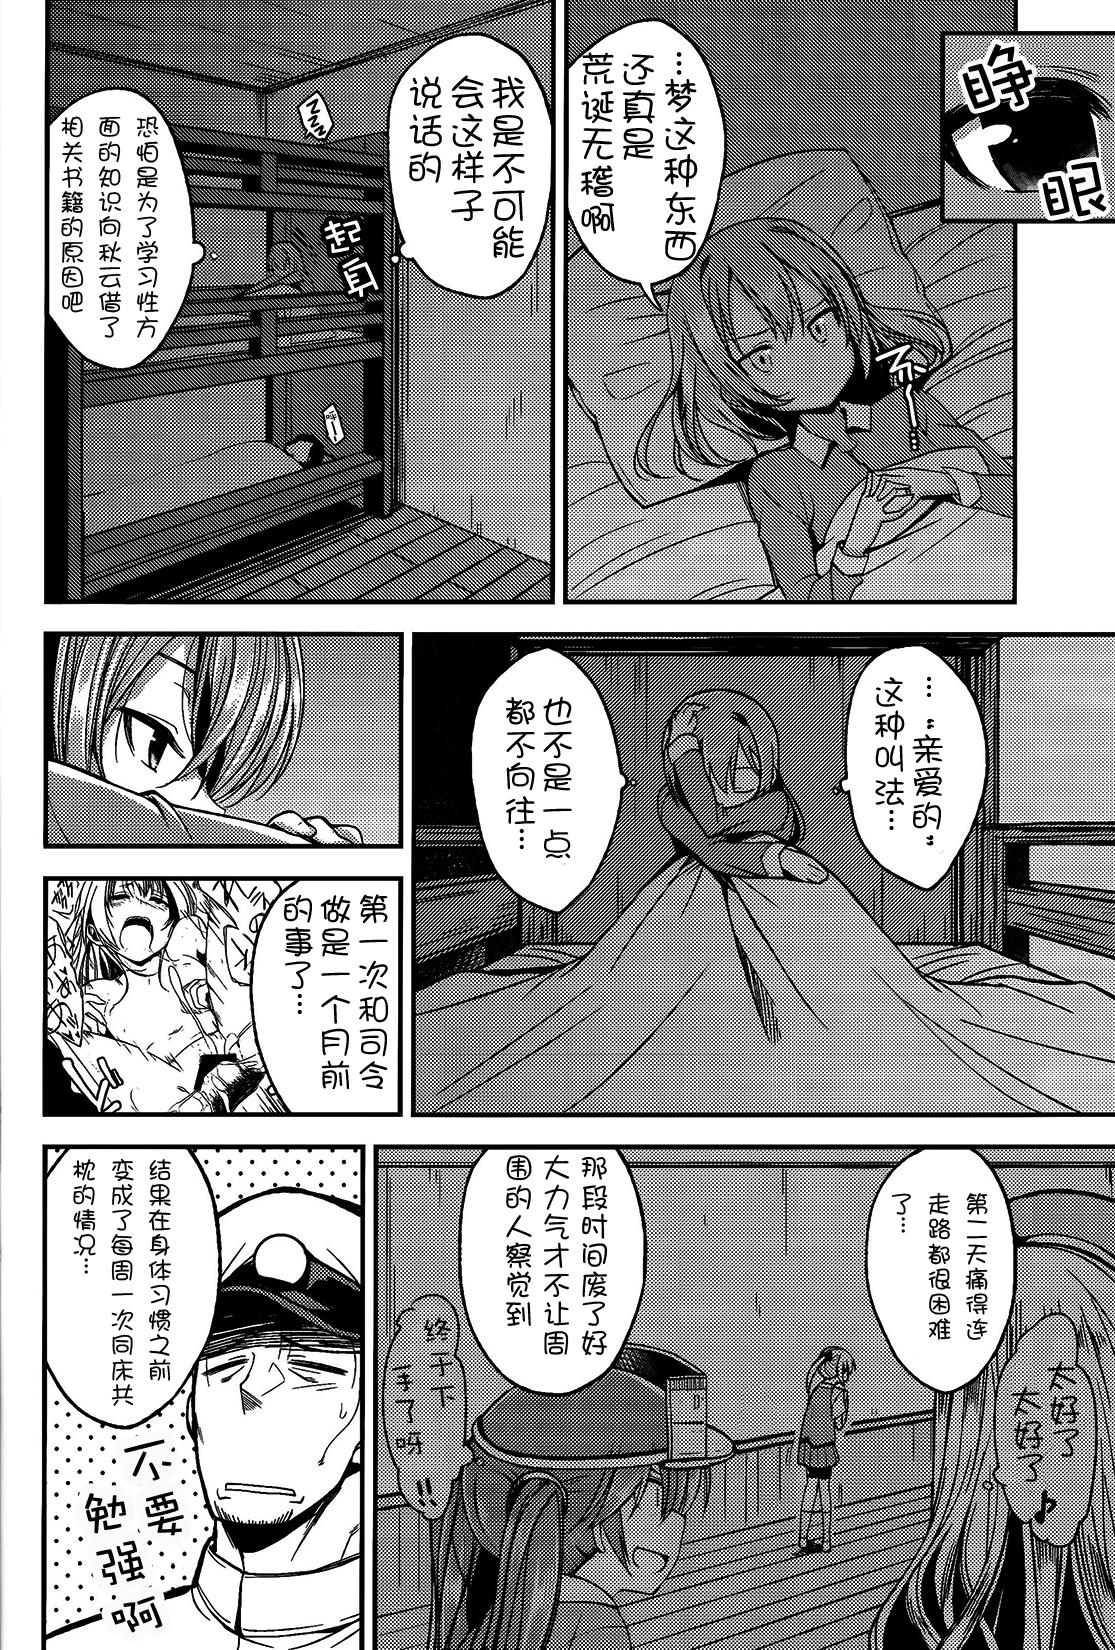 Sologirl Shiranui ga Shitai wake dewa Arimasen ga. - Kantai collection Tributo - Page 4